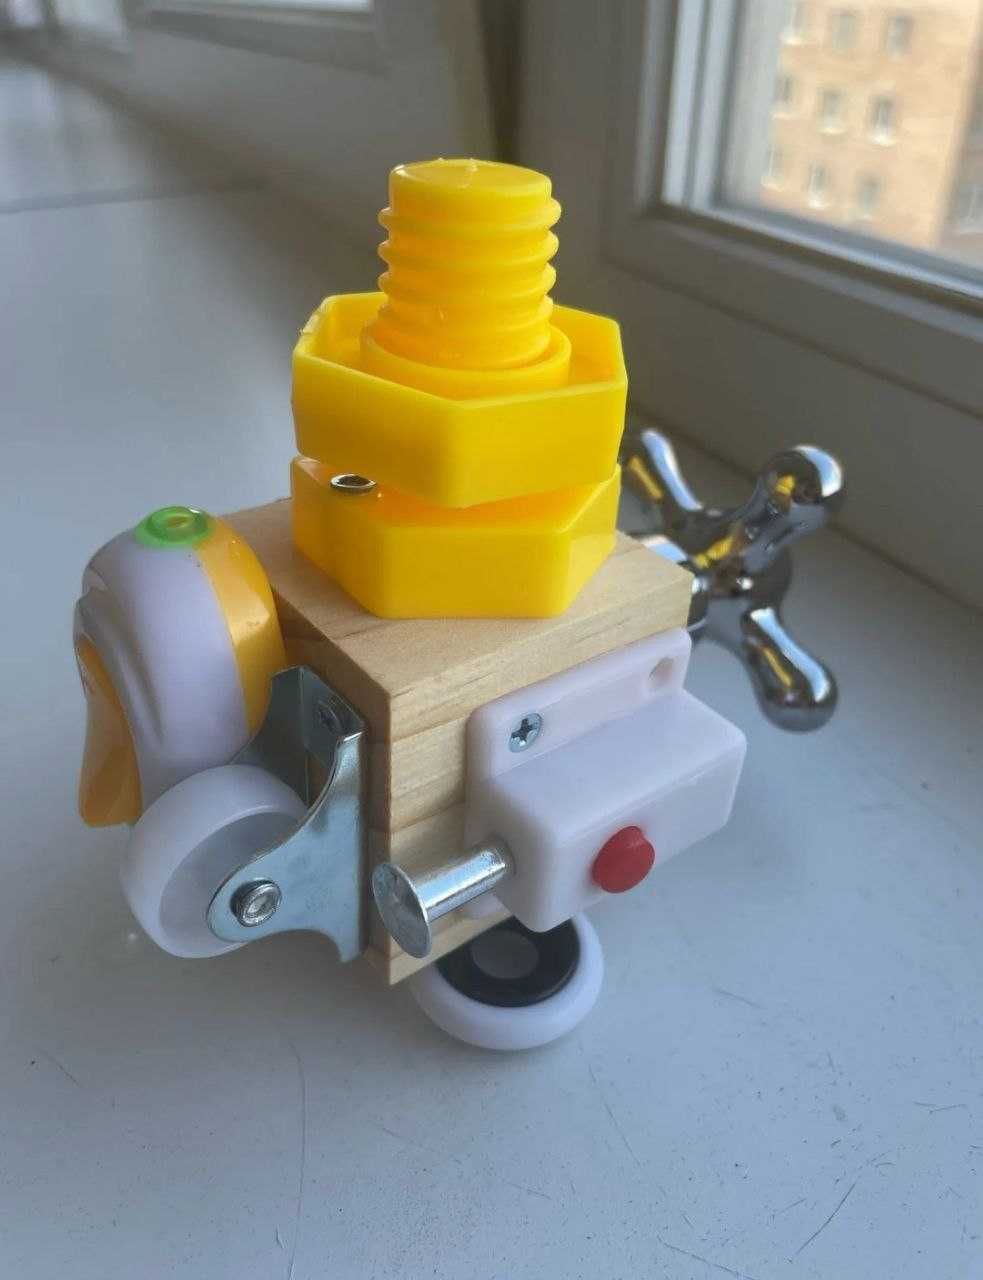 Бізі кубик, найкраща розвиваюча іграшка для дитини.